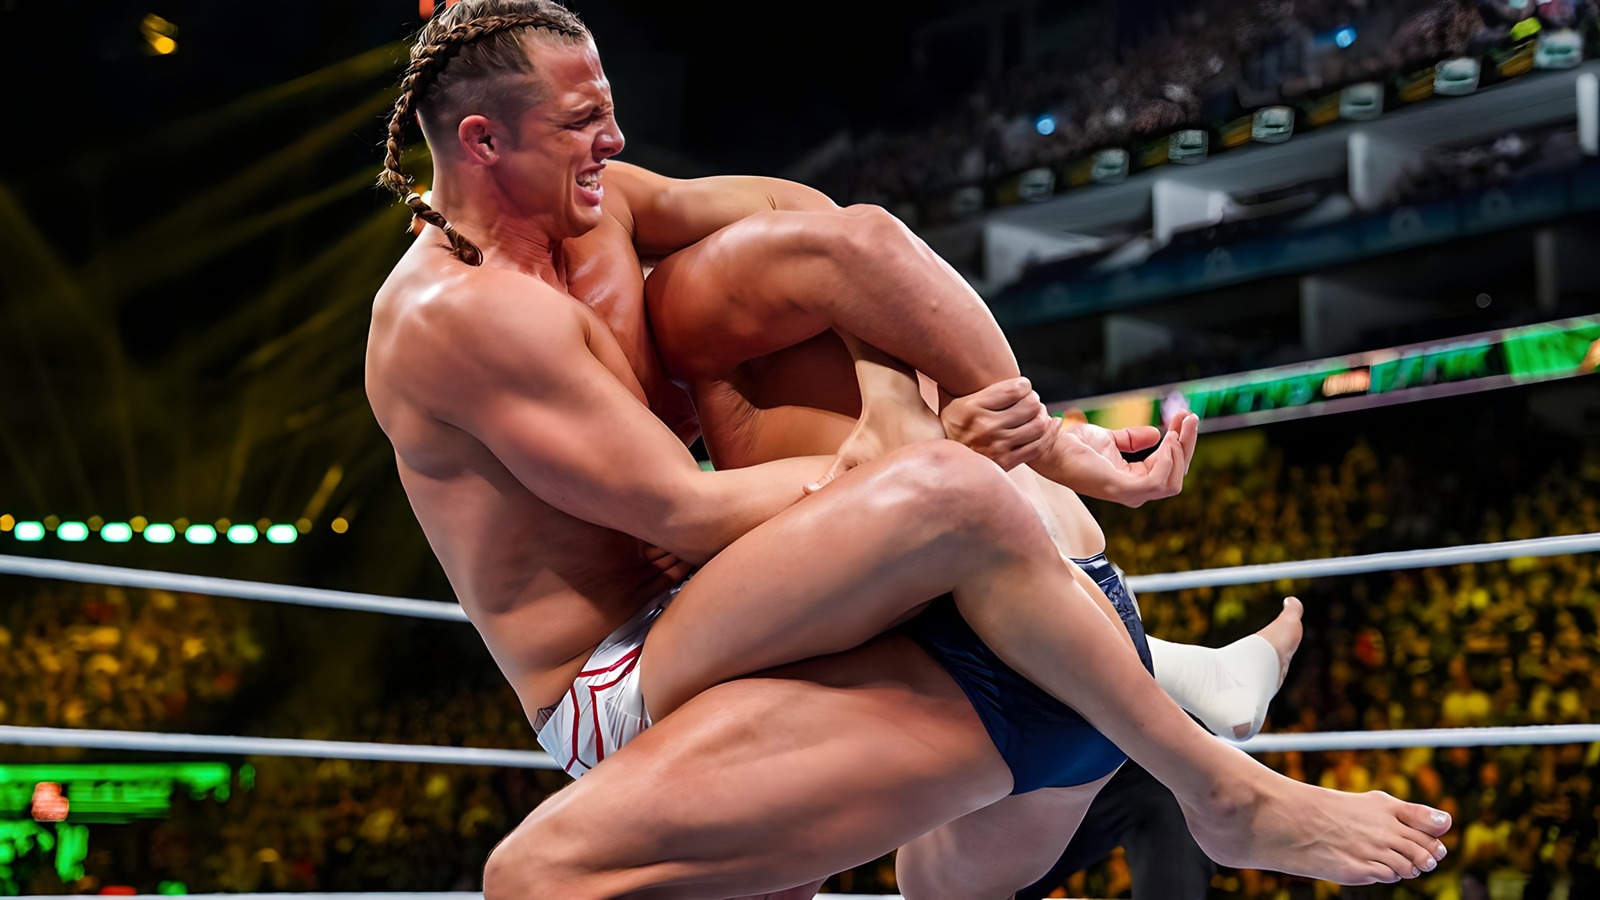 Matt Riddle liberado por la WWE, supuestamente había 'desperdiciado demasiadas oportunidades'